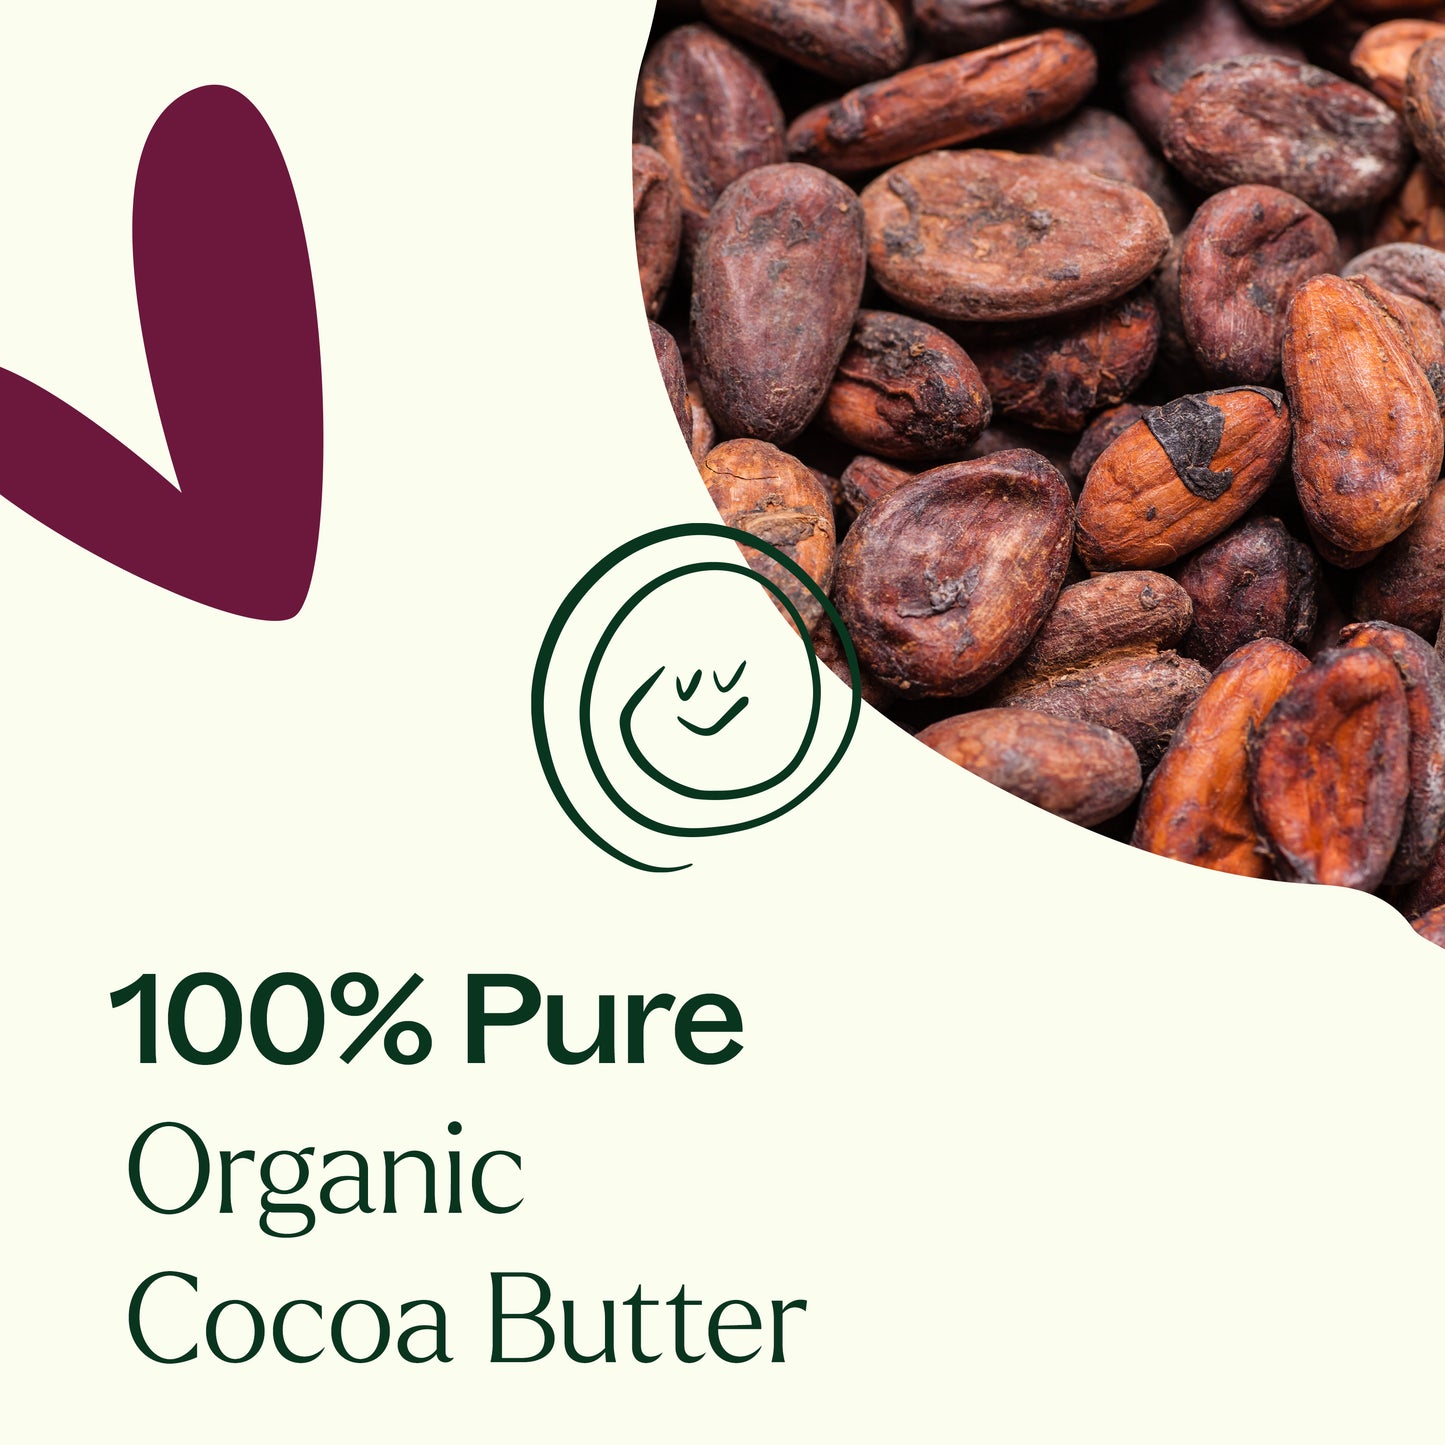 100% pure organic cocoa butter